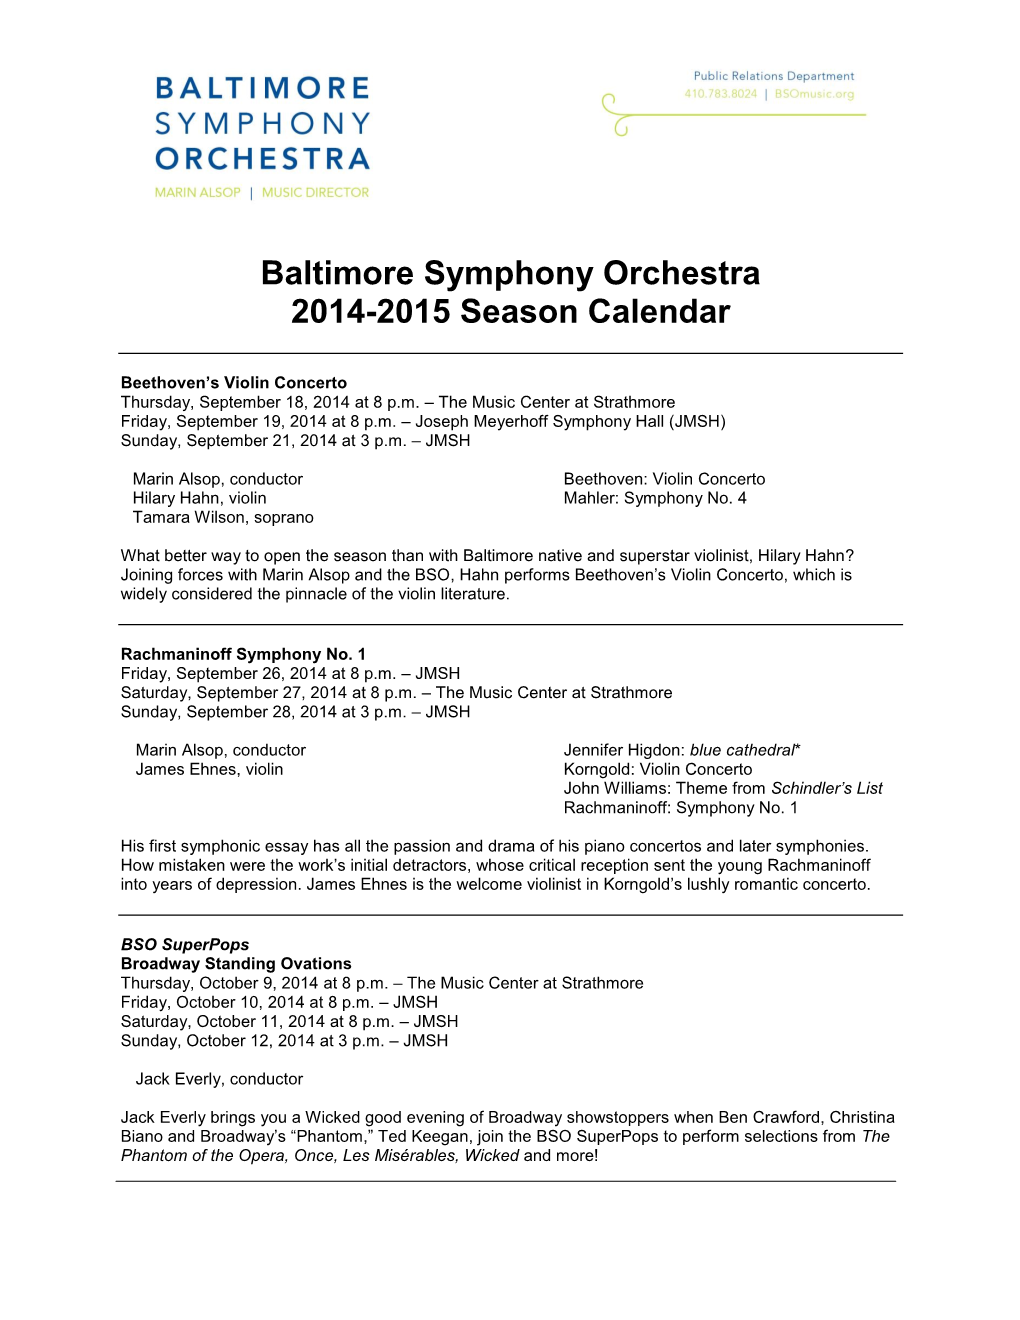 Baltimore Symphony Orchestra 2014-2015 Season Calendar